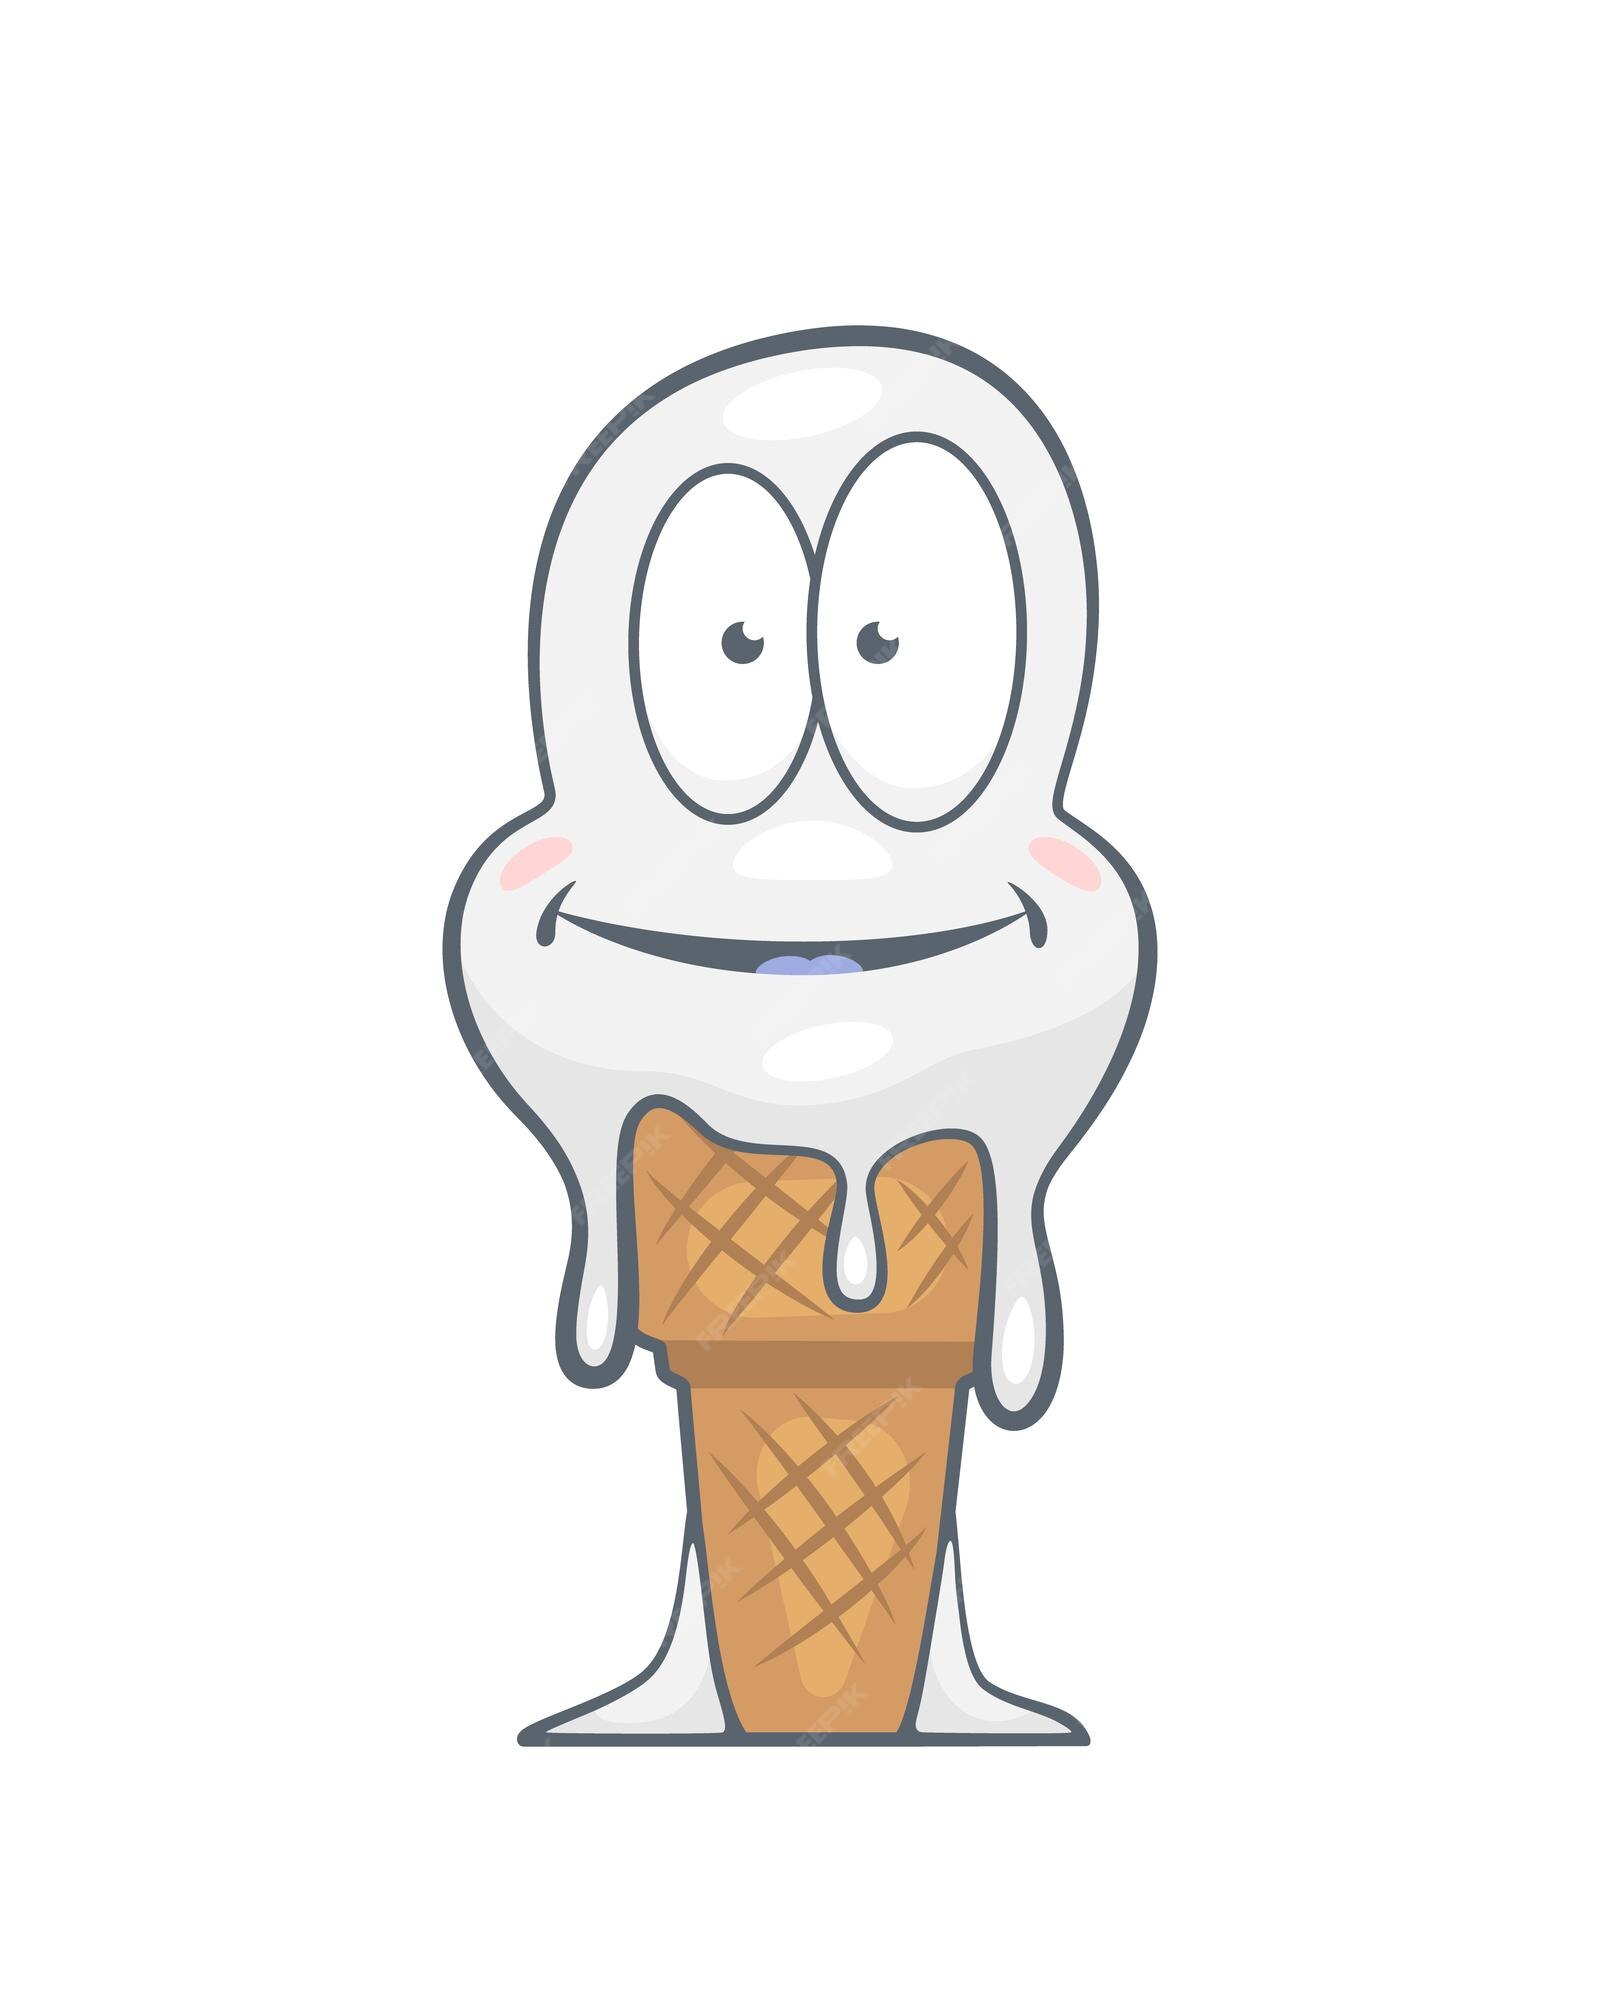 conjunto preto e branco de delicioso sorvete de baunilha e frutas em estilo  cartoon, milk-shake com canudo, ilustração vetorial em um fundo branco,  livro para colorir 8089017 Vetor no Vecteezy